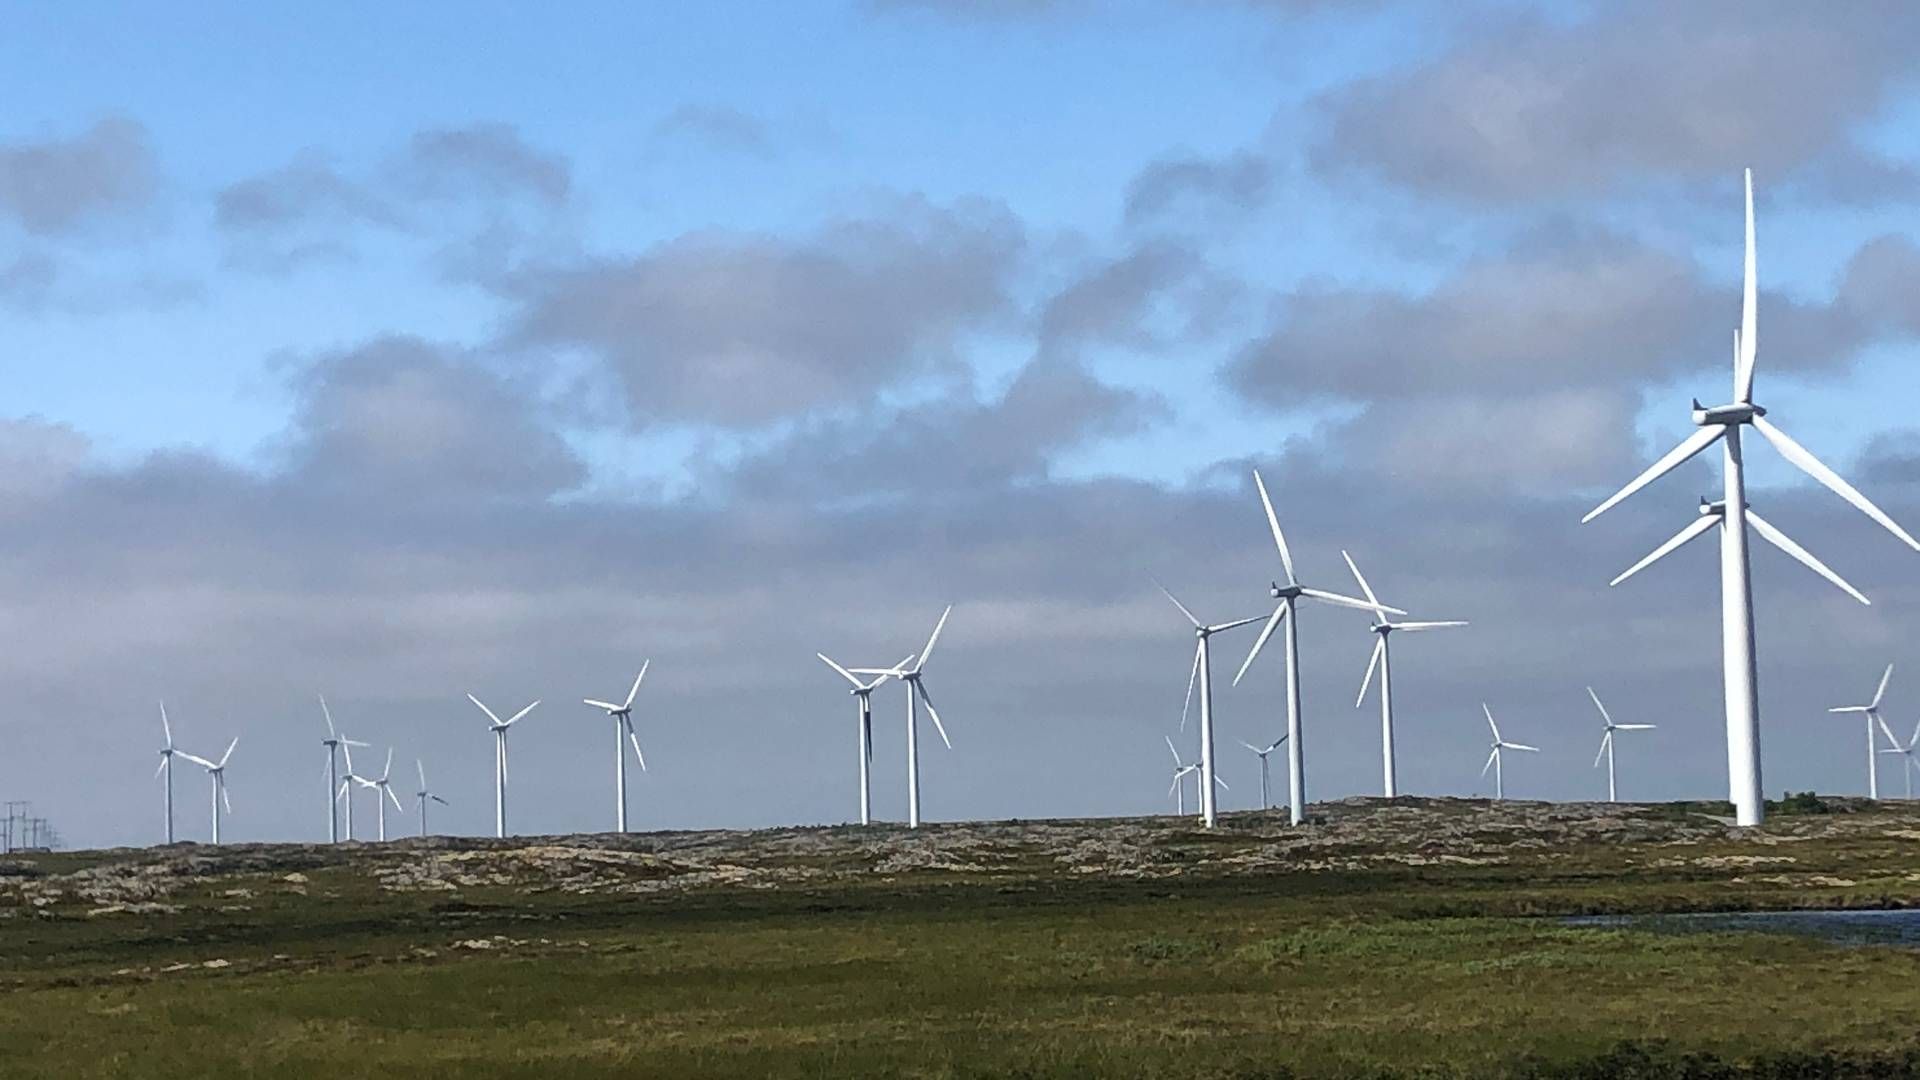 SOL OG VIND: Smøla vindpark brukes til å teste ut hvordan det vil fungere å kombinere solenergi og vindkraft på samme sted. | Foto: Møre og Romsdal fylkeskommune